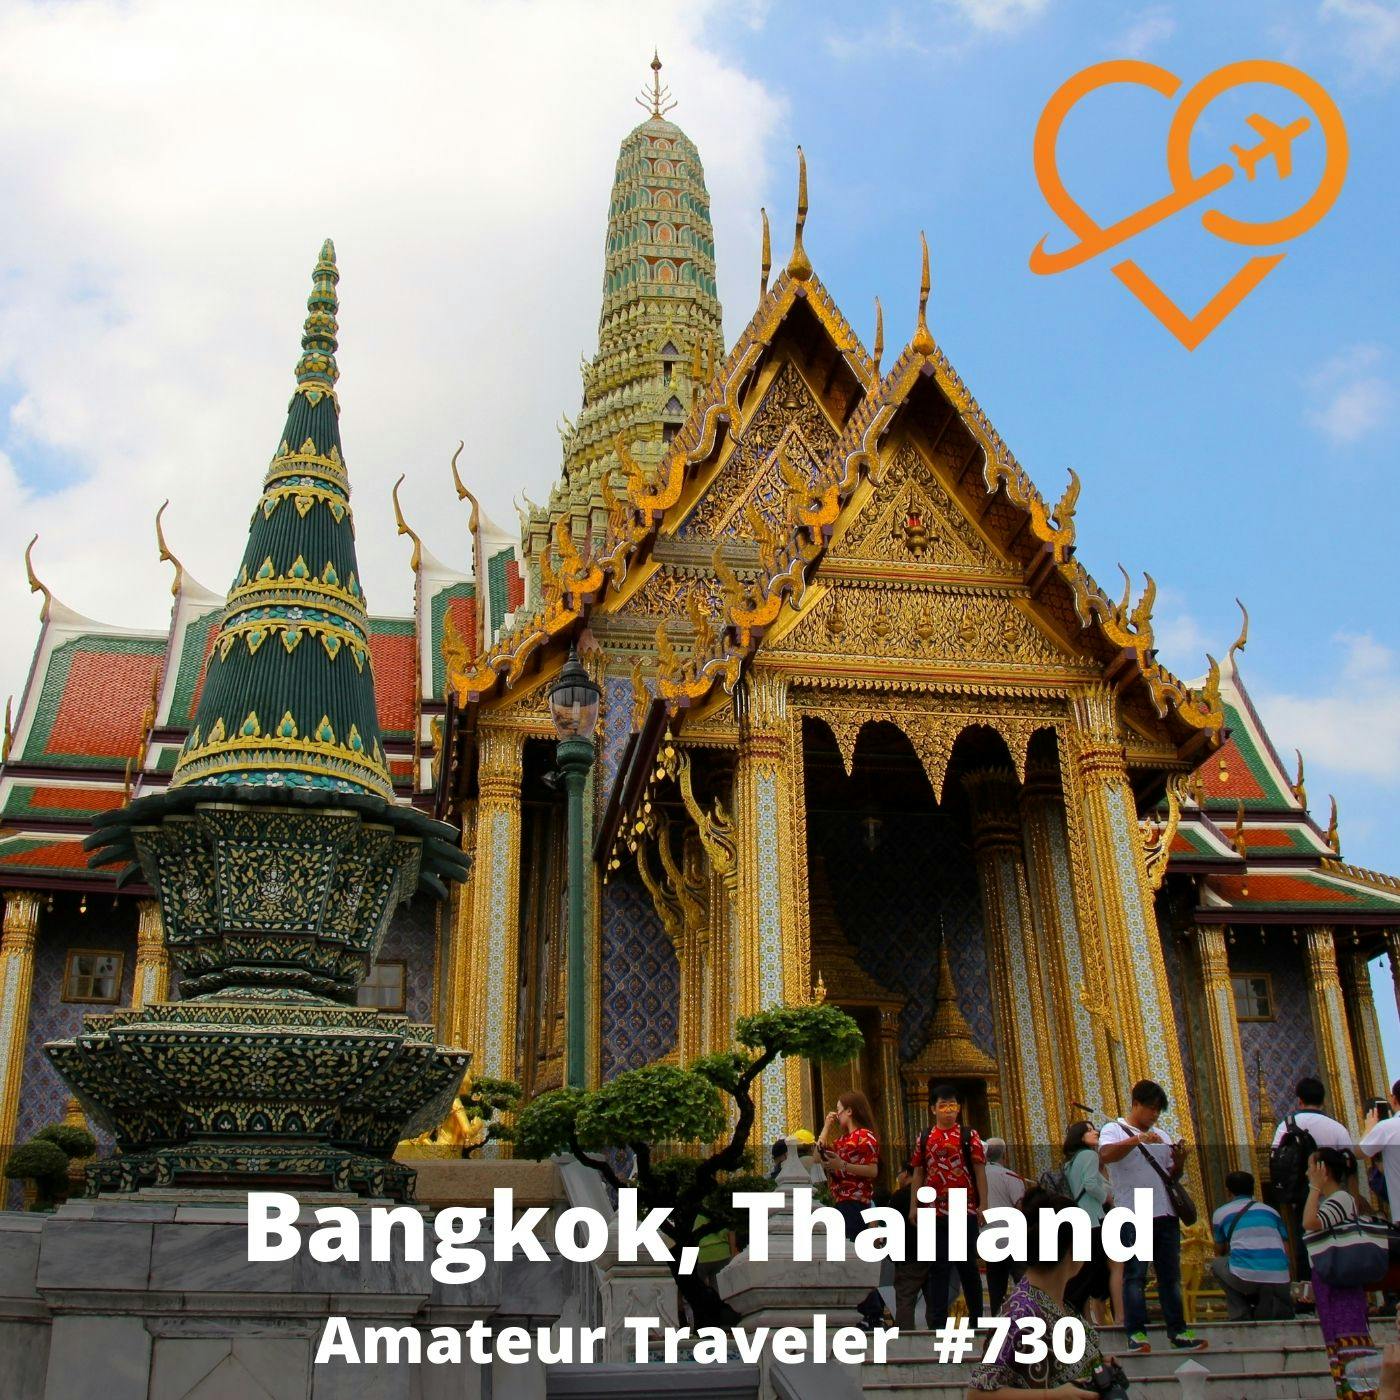 AT#730 - Travel to Bangkok, Thailand (Repeat)